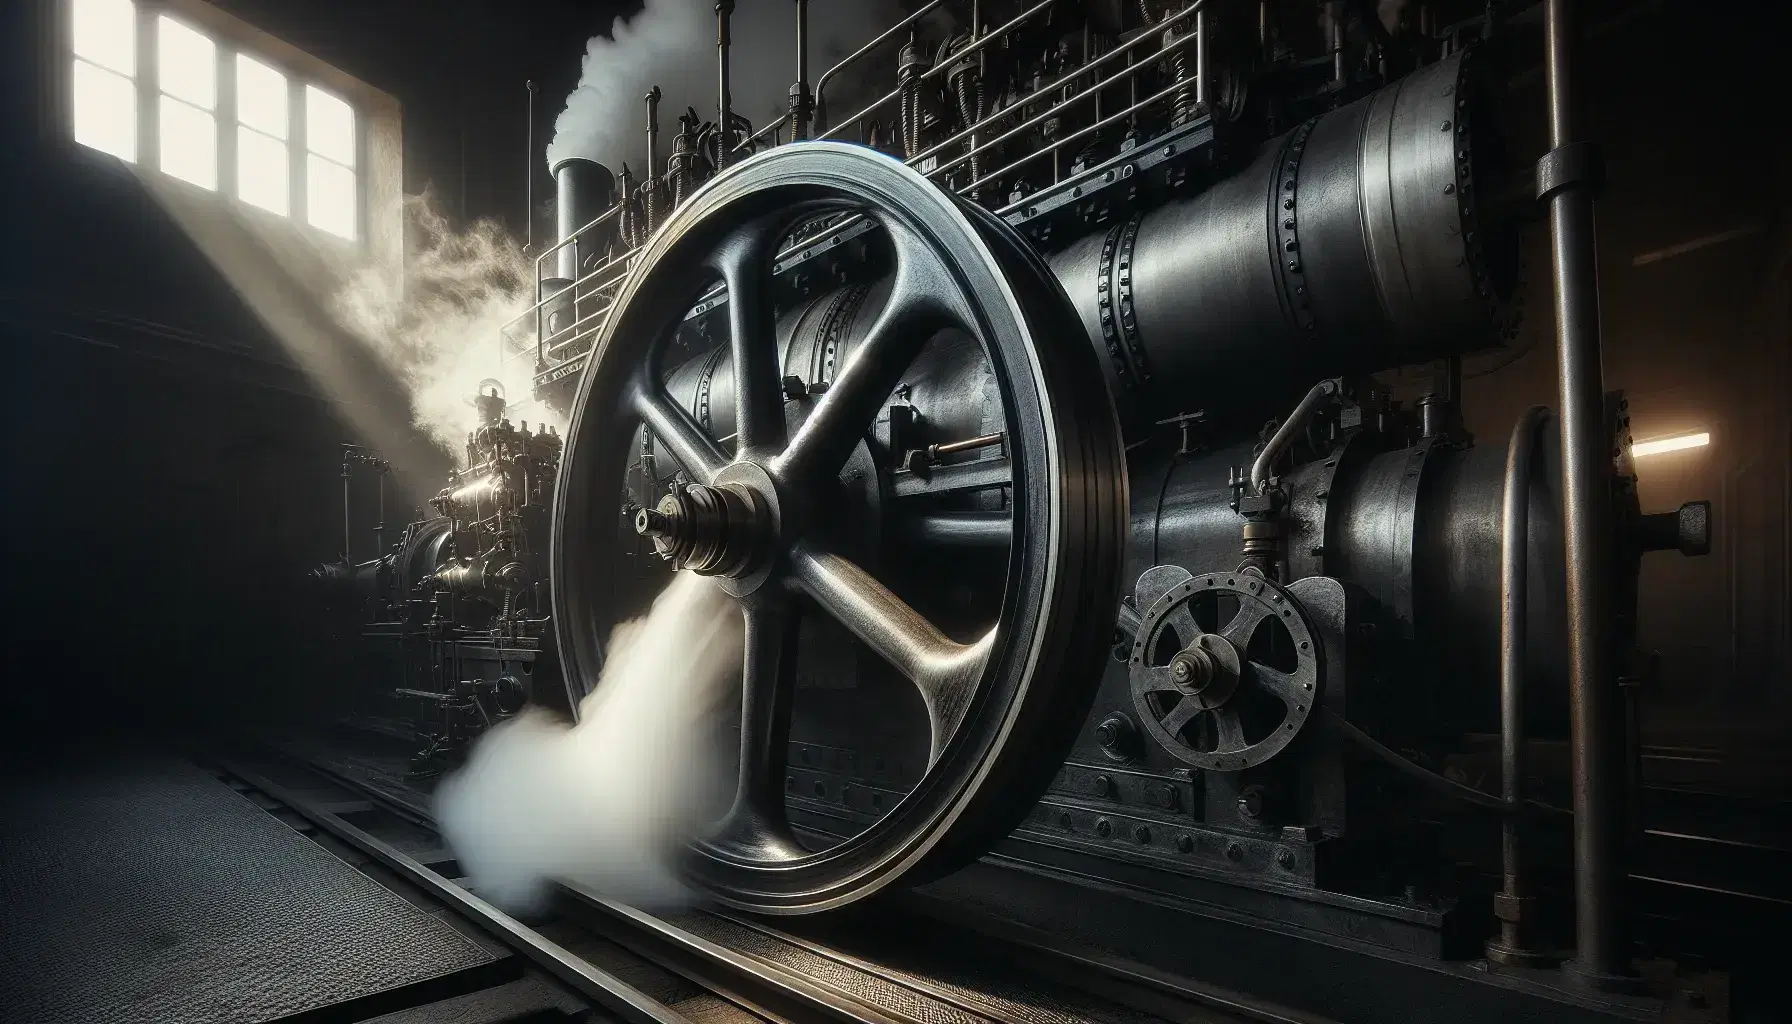 Antigua locomotora de vapor en funcionamiento con rueda metálica negra y pistón plateado, rodeada de vapor sobre fondo desenfocado.